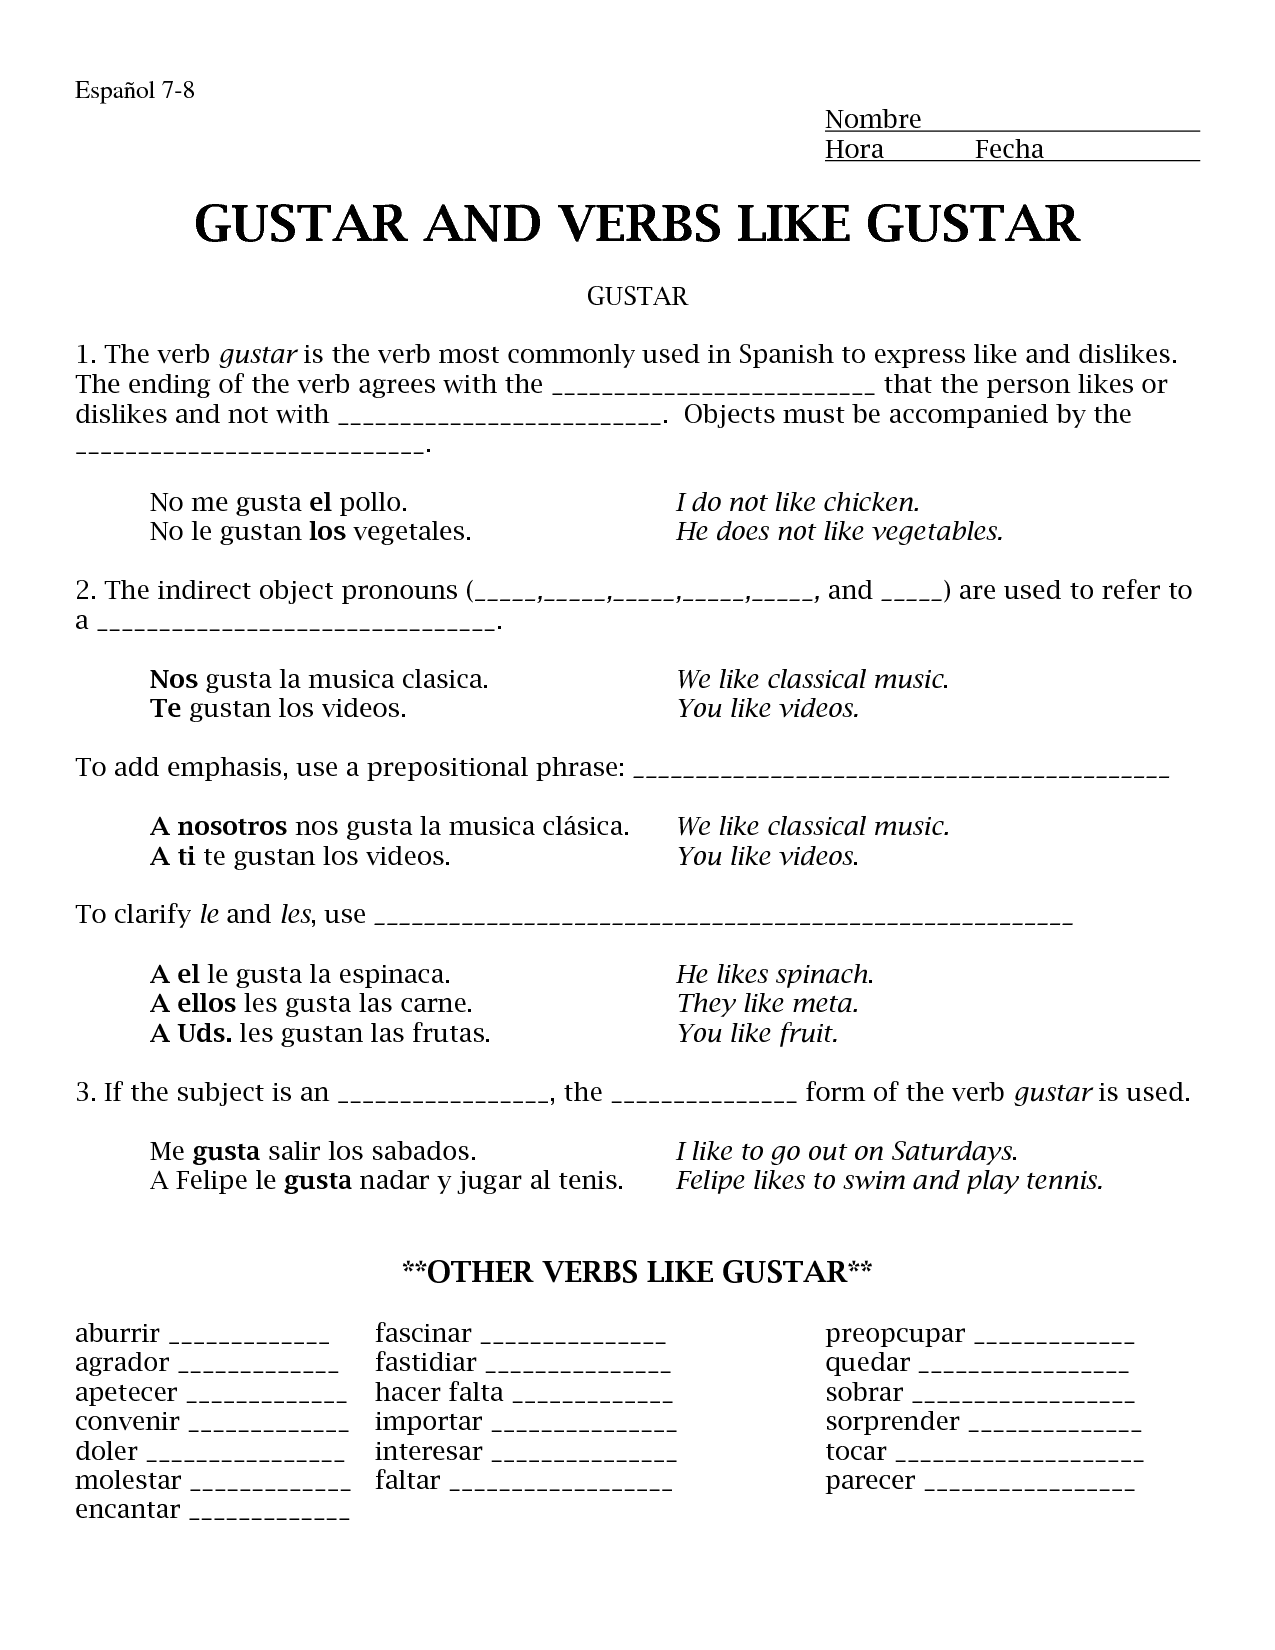 Verbs Like Gustar Worksheet